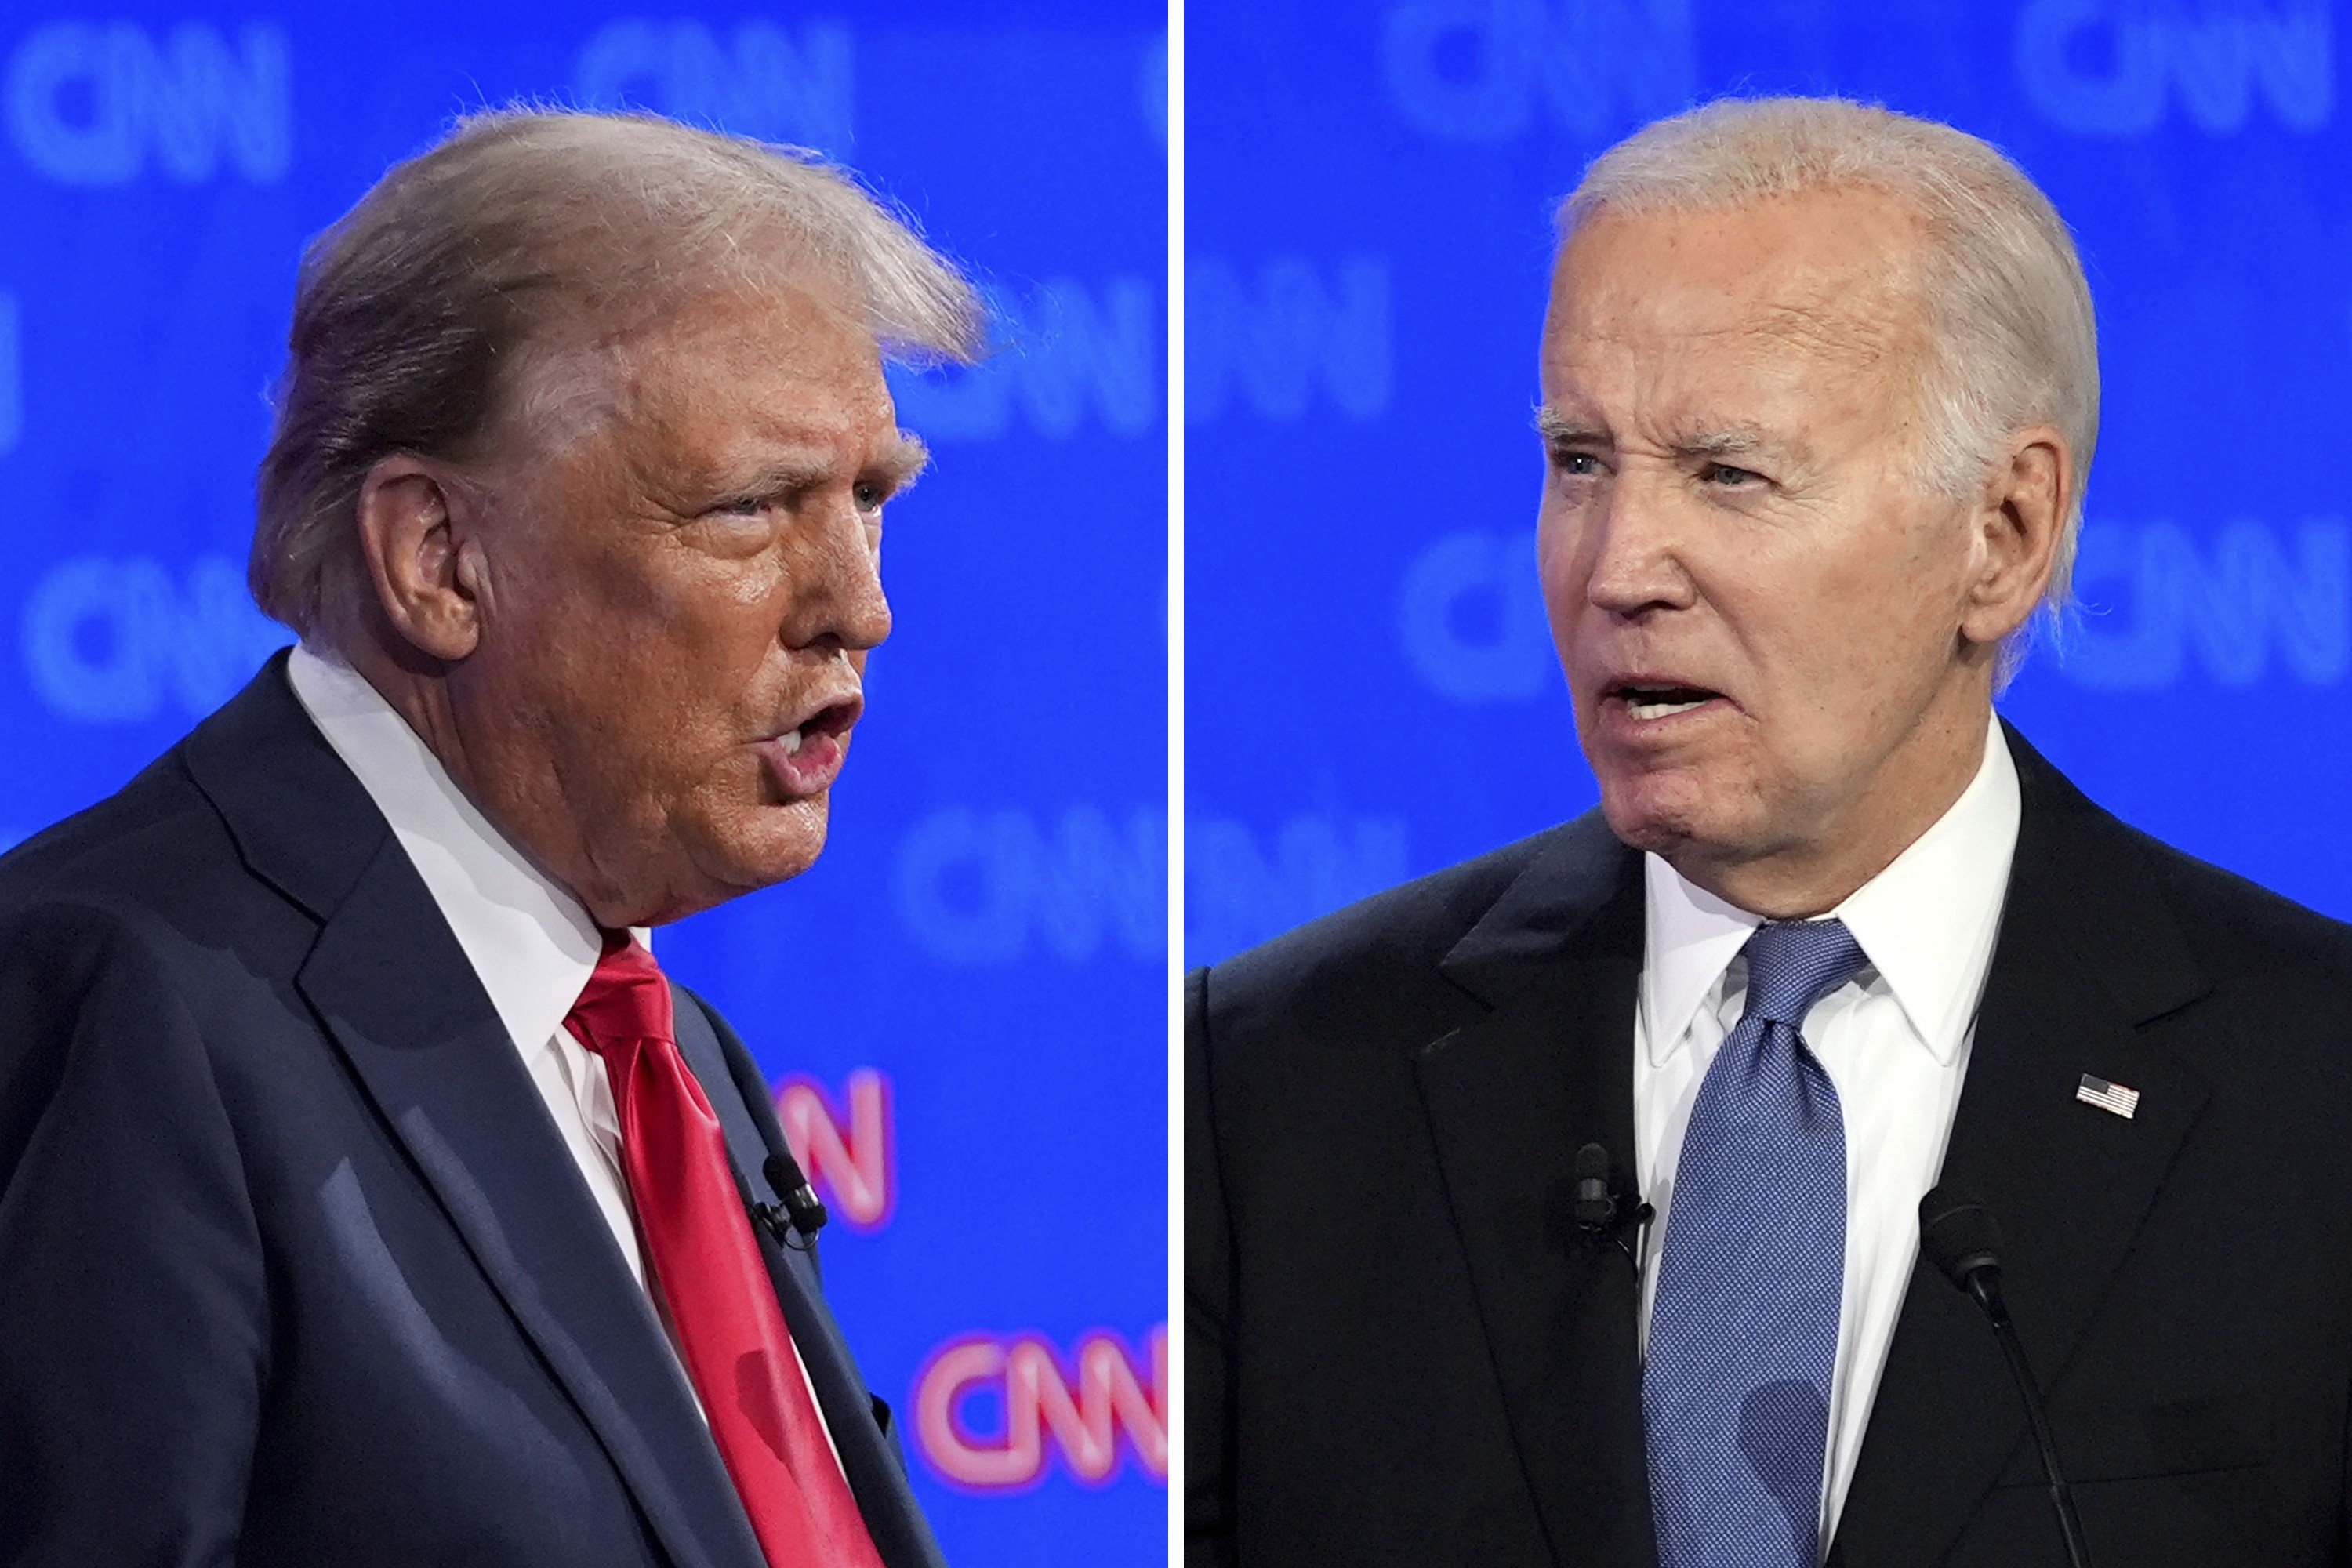 Ataques pessoais: durante debate, Biden cita atriz pornô e Trump fala sobre filho do presidente